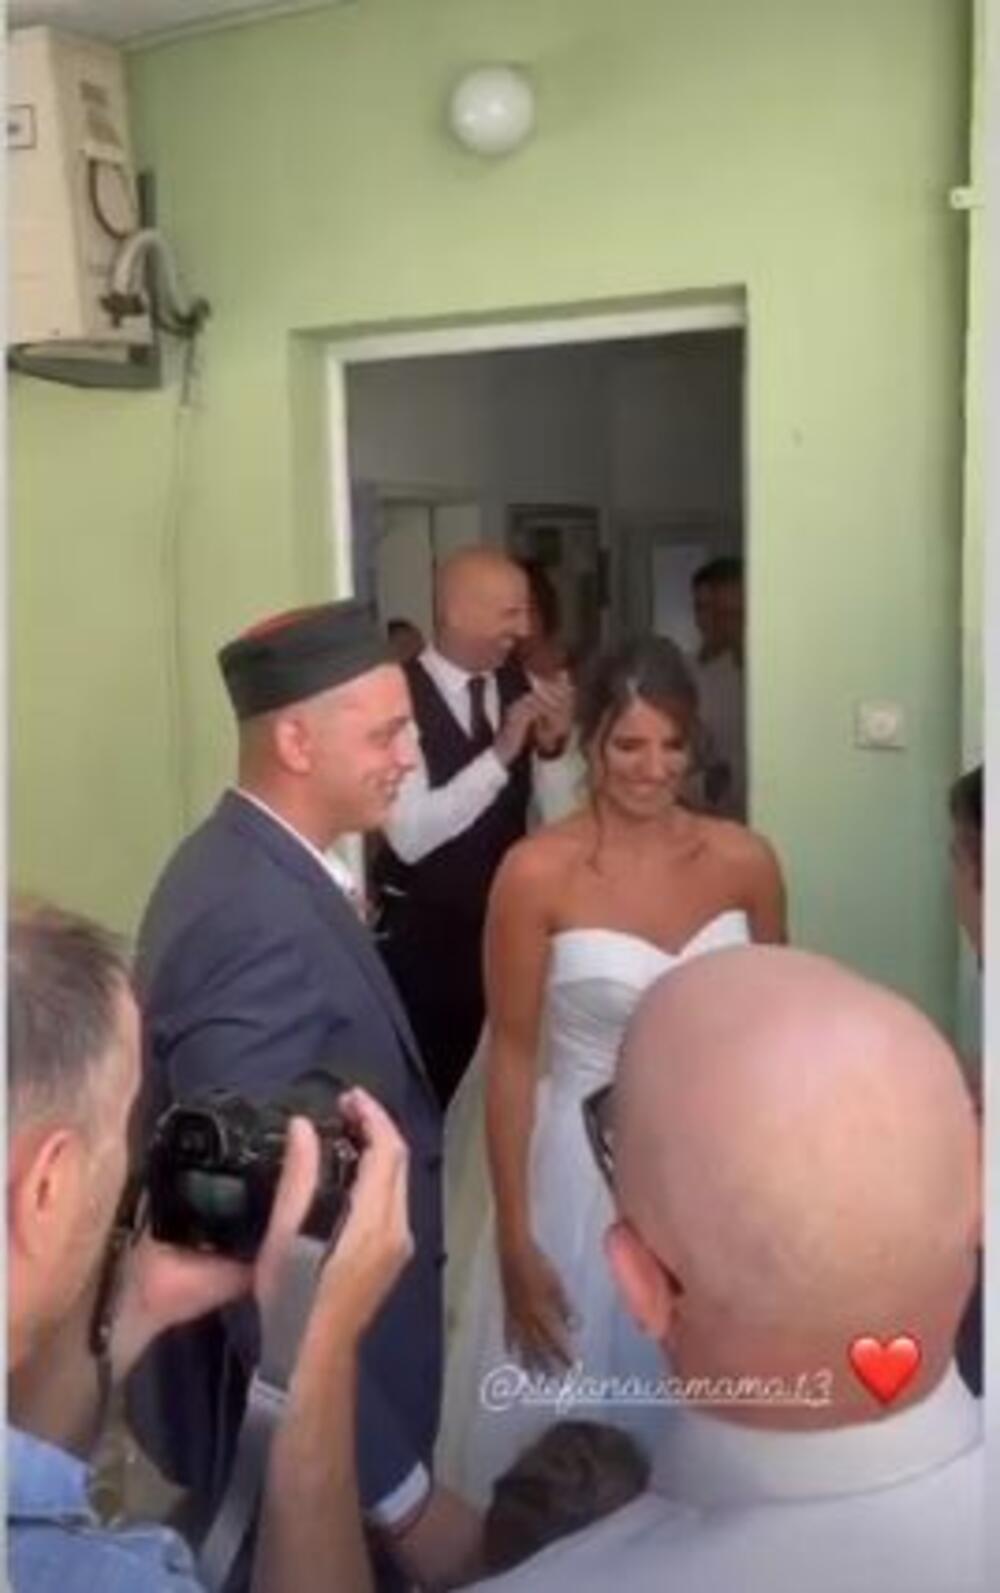 <p>Košarkašica Ana Dabović danas je rekla "da" vaterpolisti Iliji Musturu u njihovom rodnom Herceg Novom, a njena starija sestra Milica podelila je nekoliko trenutaka sa svadbe</p>